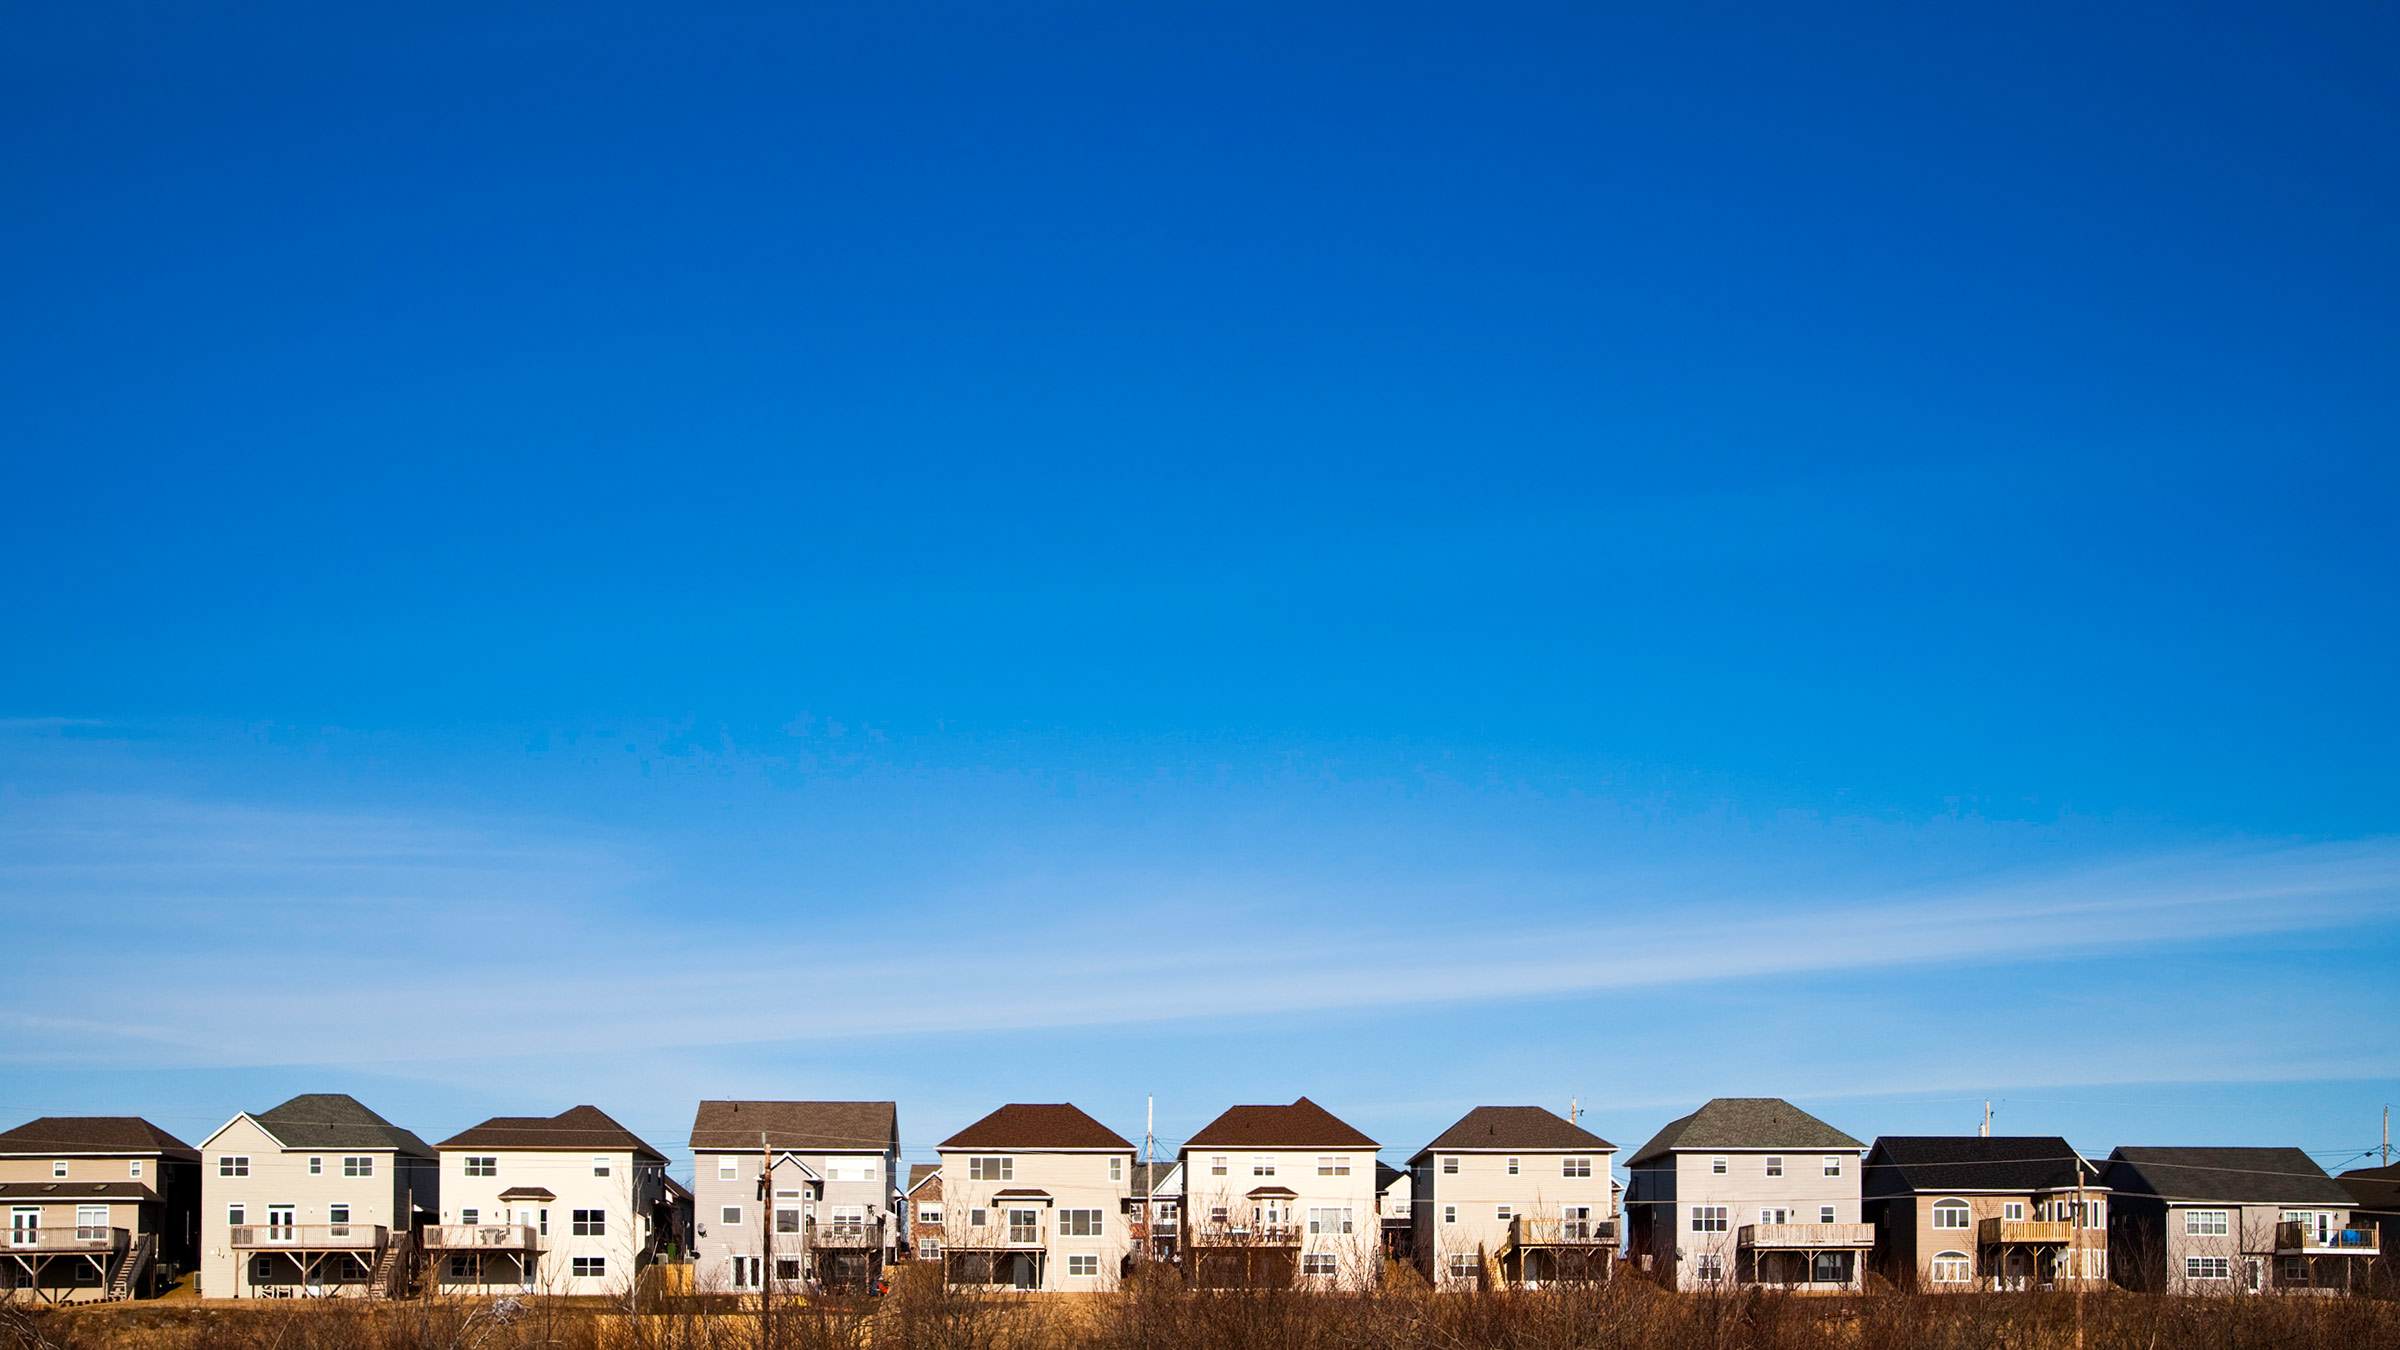 A row of houses beneath the blue sky